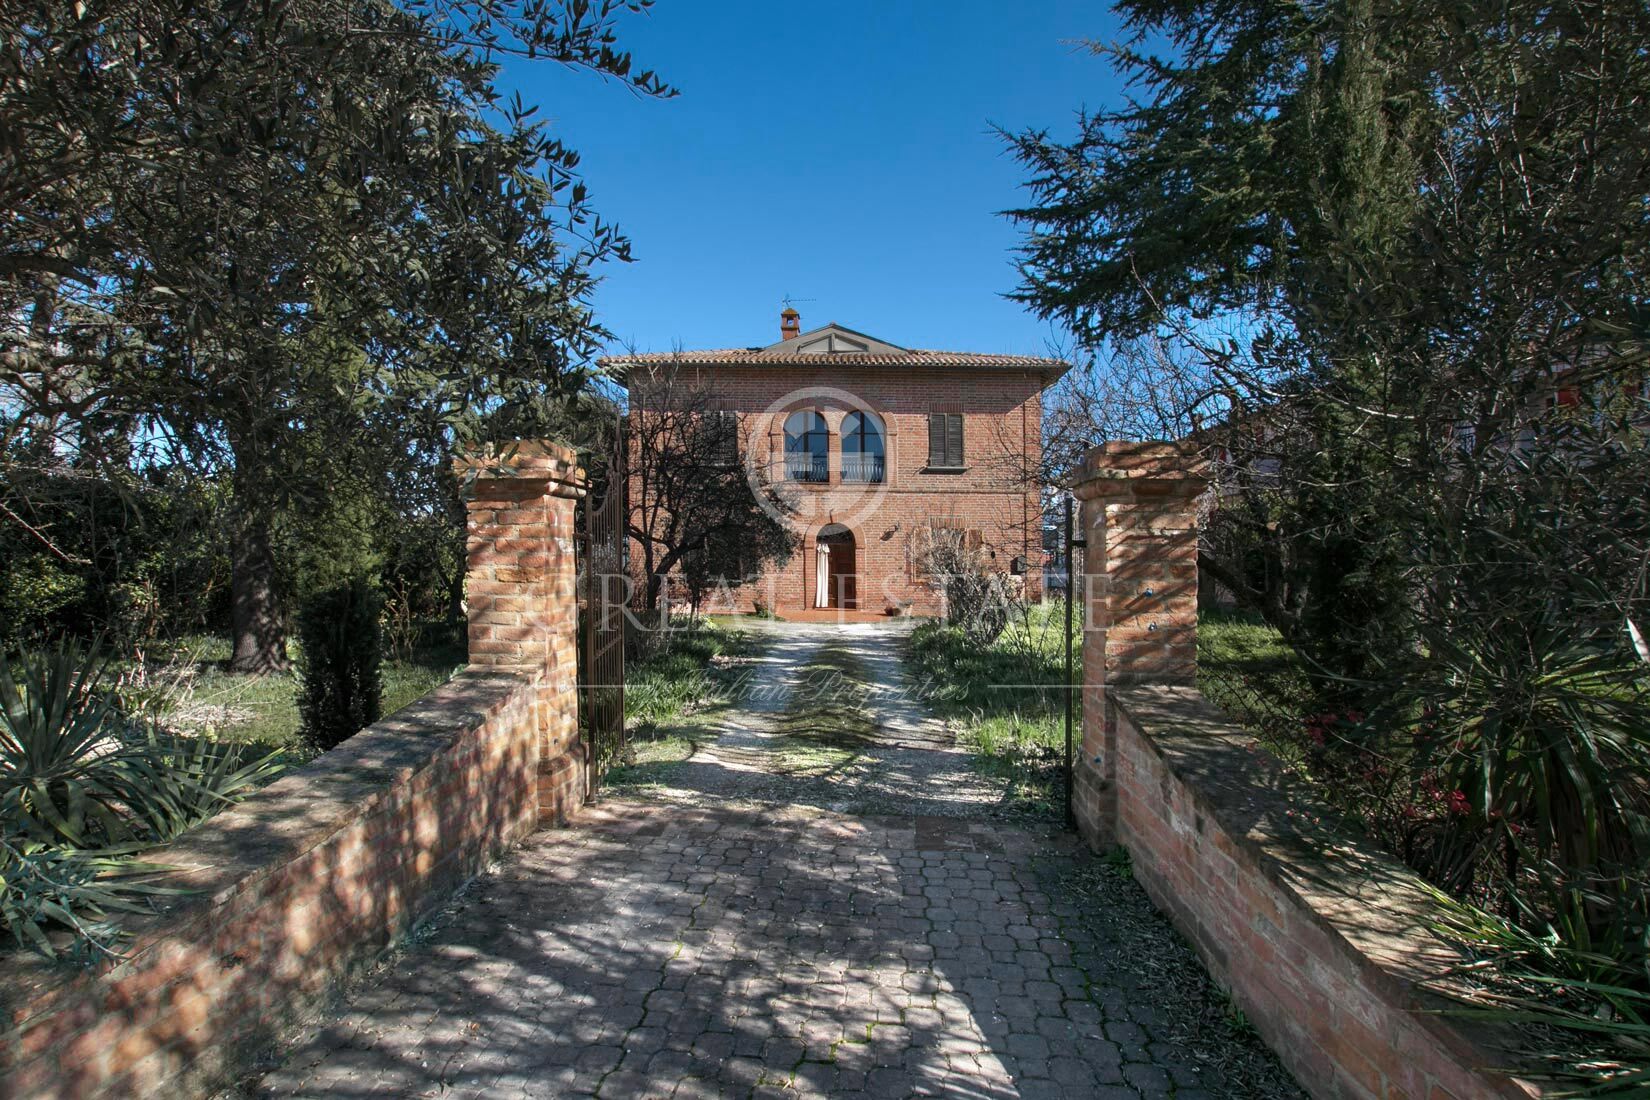 (Woon)boerderij te koop in Italië - Toscane - Montepulciano - € 490.000